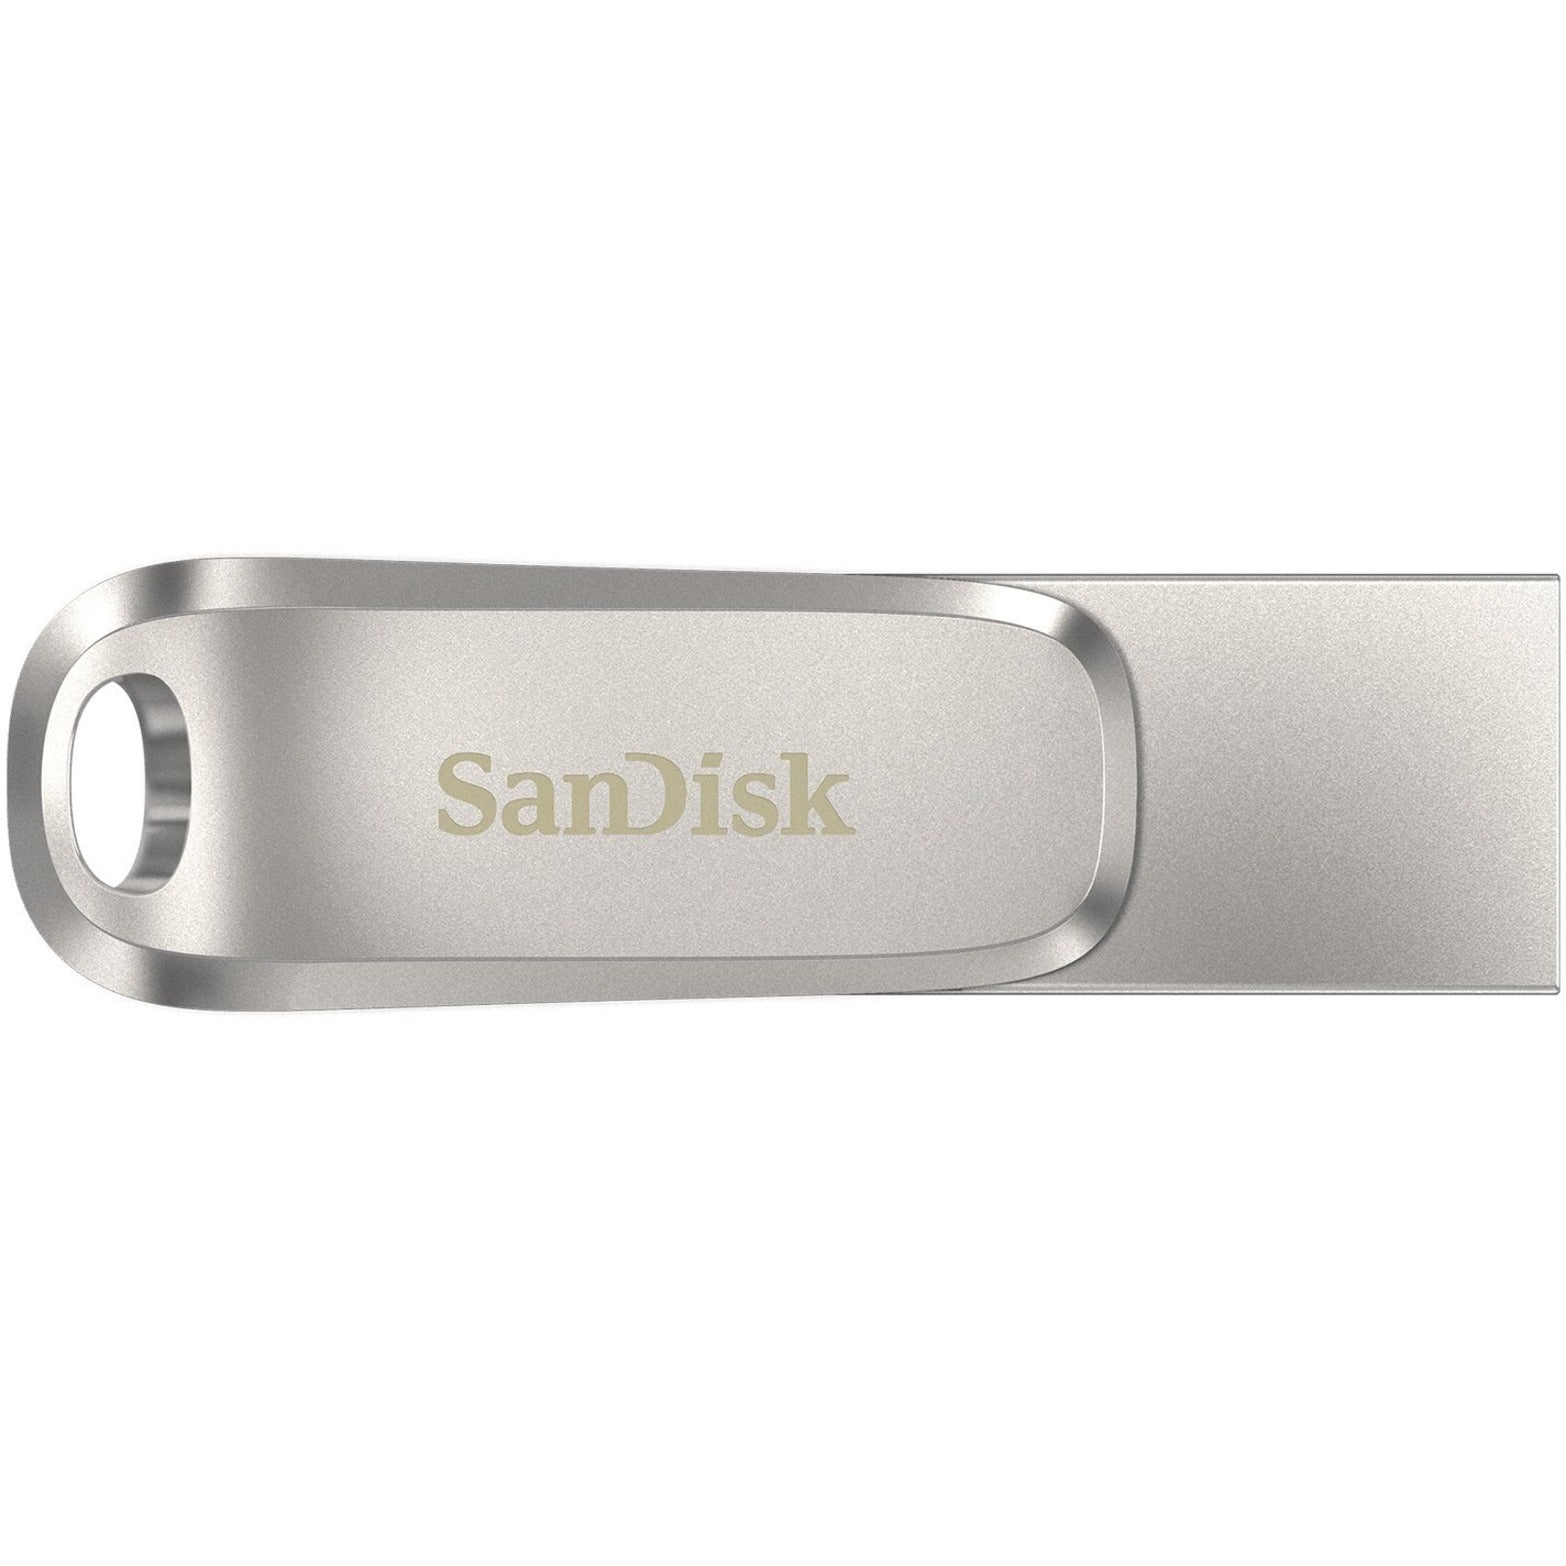 SanDisk SDDDC4-032G-A46 Ultra Dual Drive Luxe USB TYPE-C - 32GB Transfert de données haute vitesse et stockage